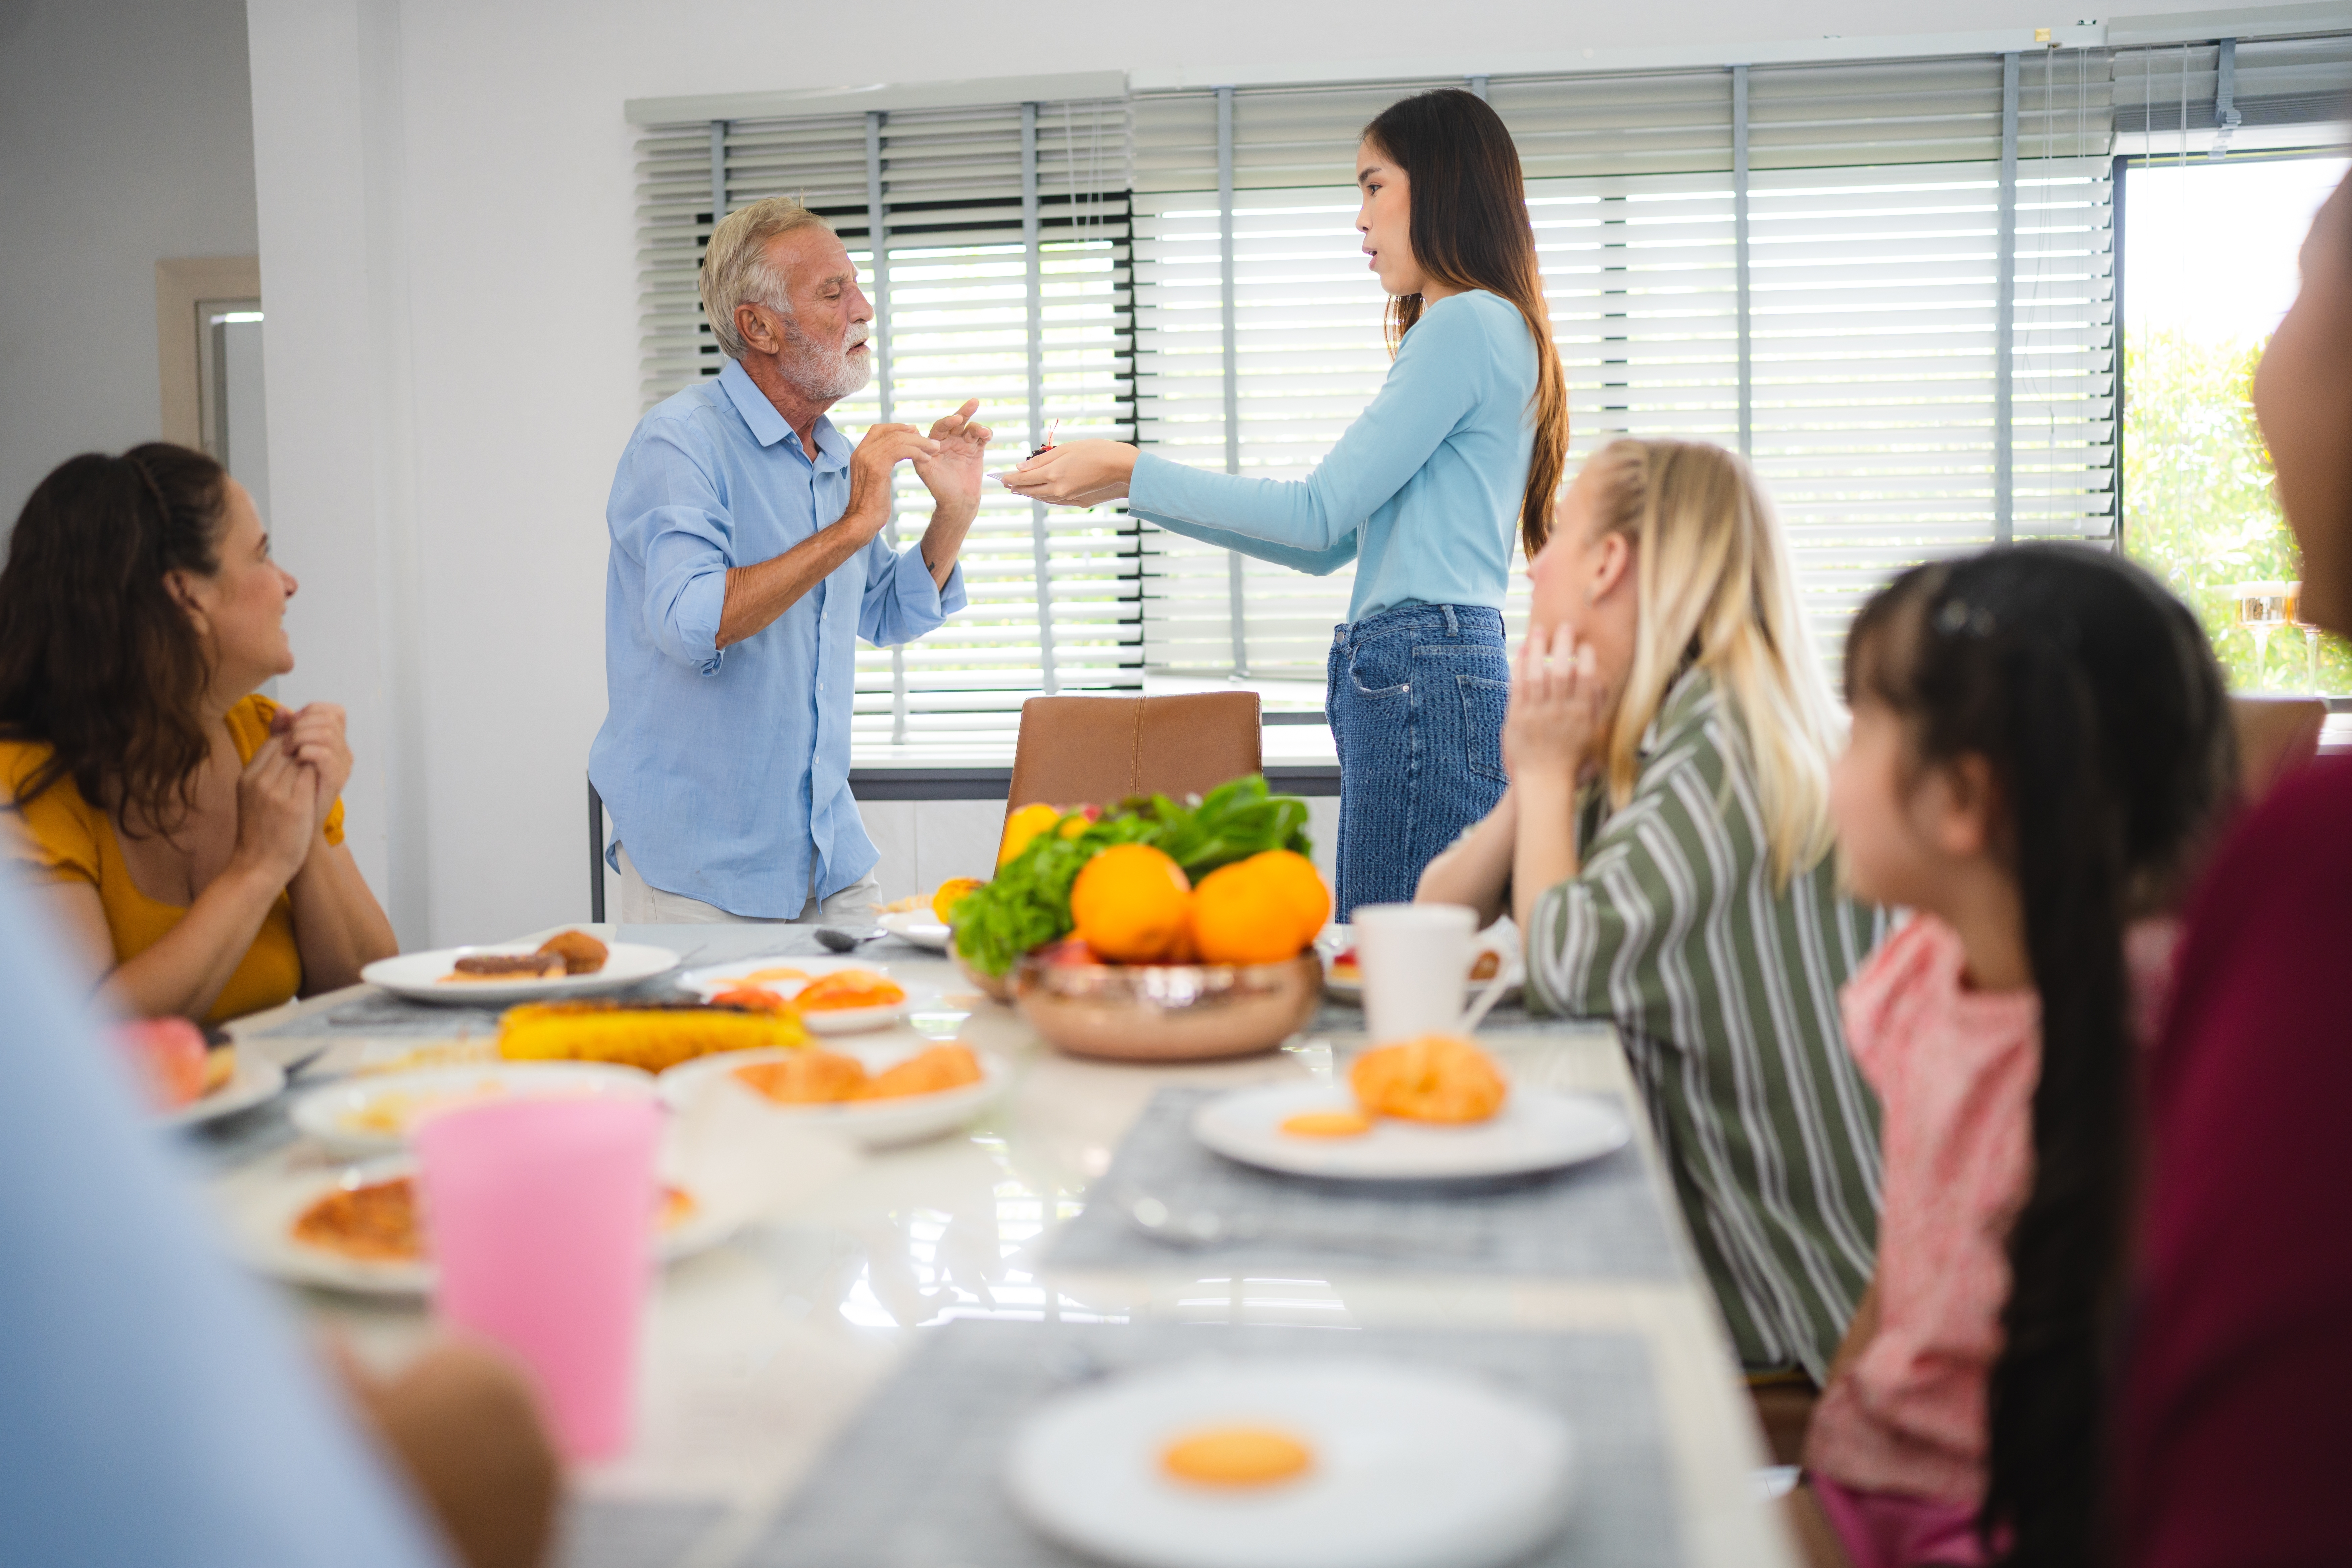 Un homme âgé parlant à une jeune fille pendant le dîner familial dans la salle à manger | Source : Shutterstock